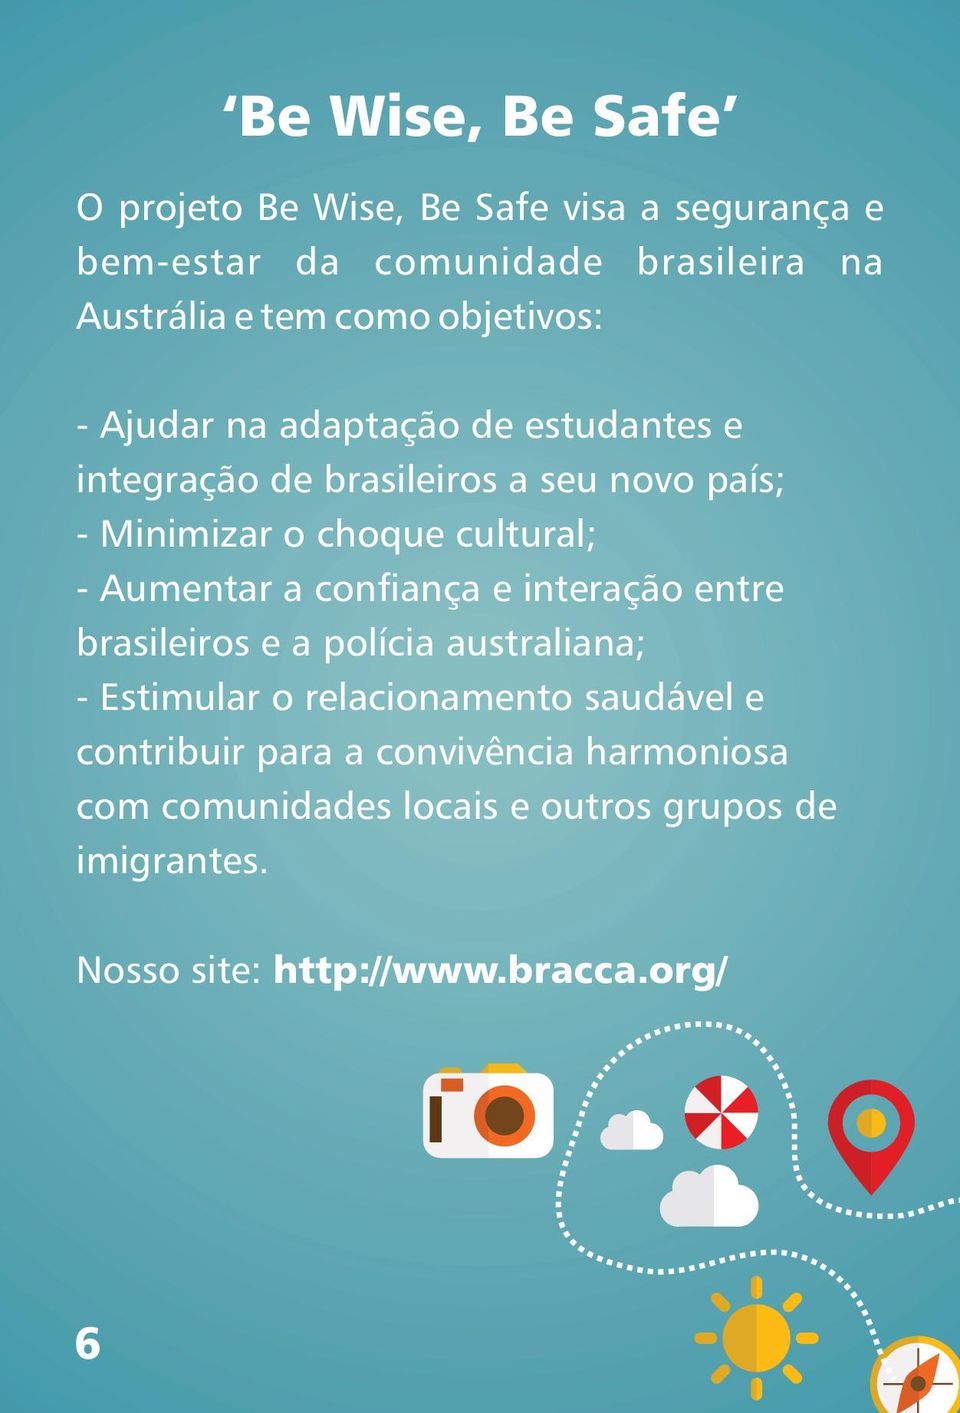 - Aumentar a confiança e interação entre brasileiros e a polícia australiana; - Estimular o relacionamento saudável e